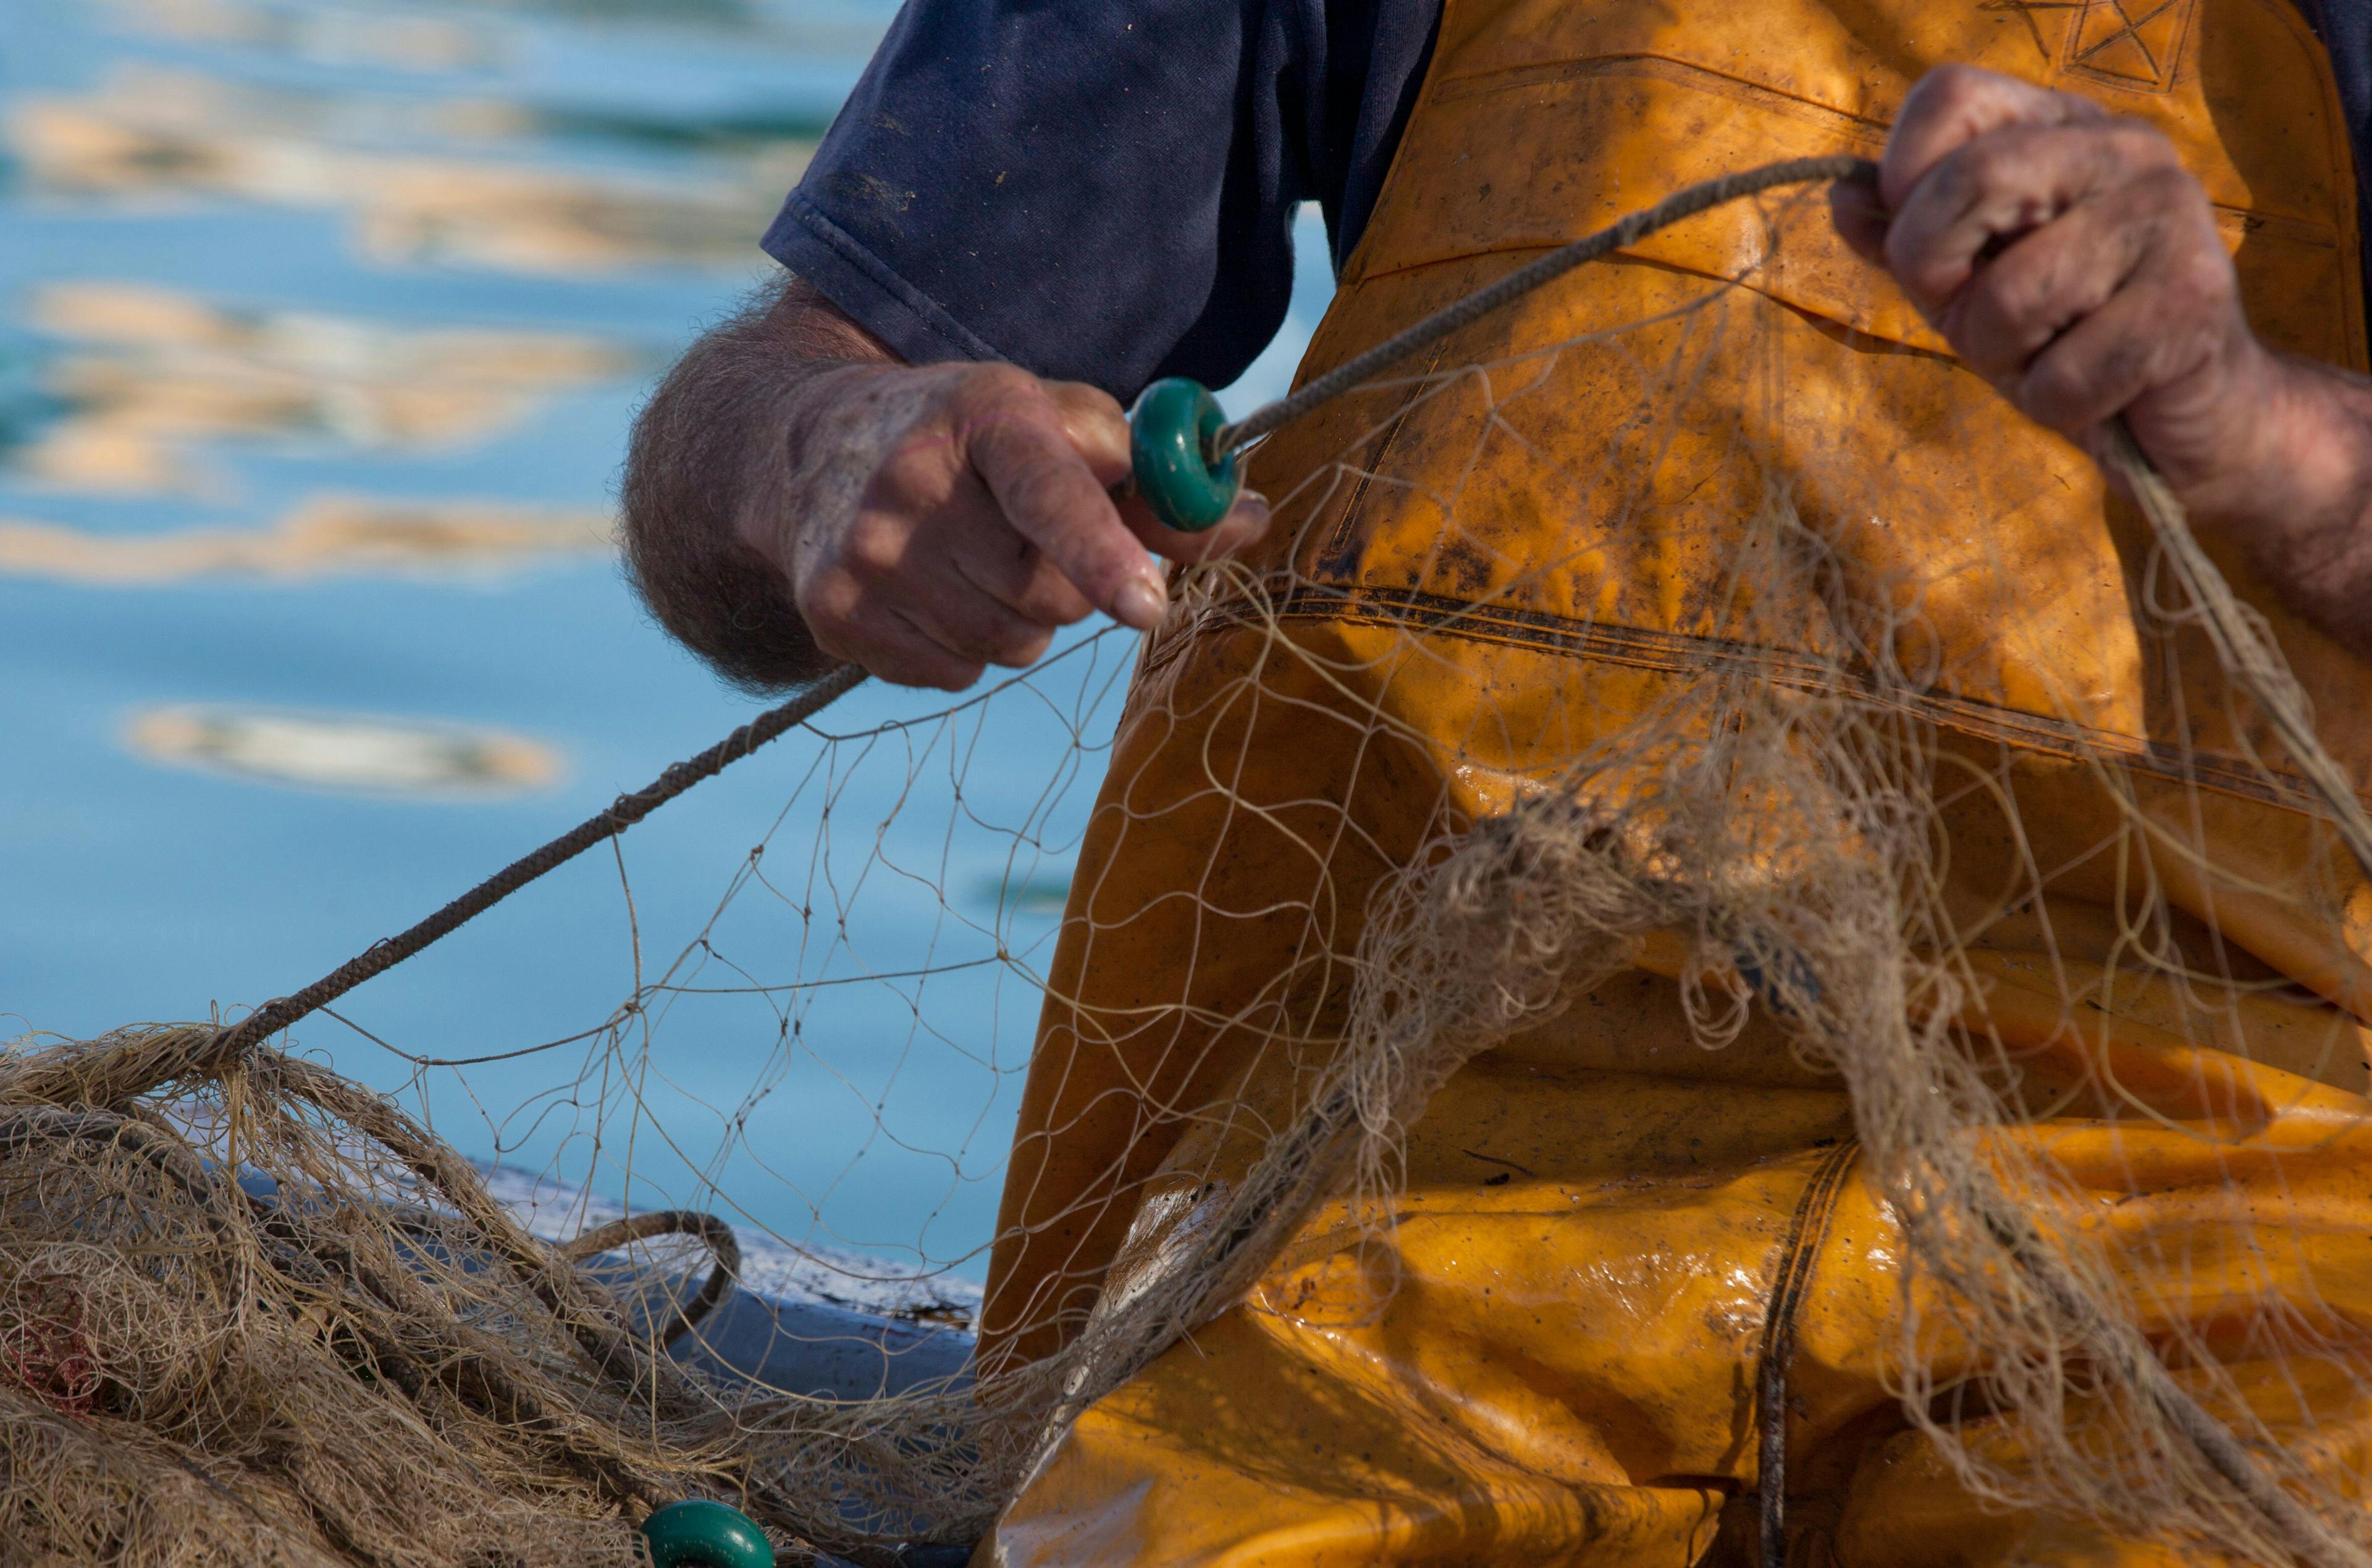 Pescador xarxes - Turisme de l'Ametlla de Mar.jpg